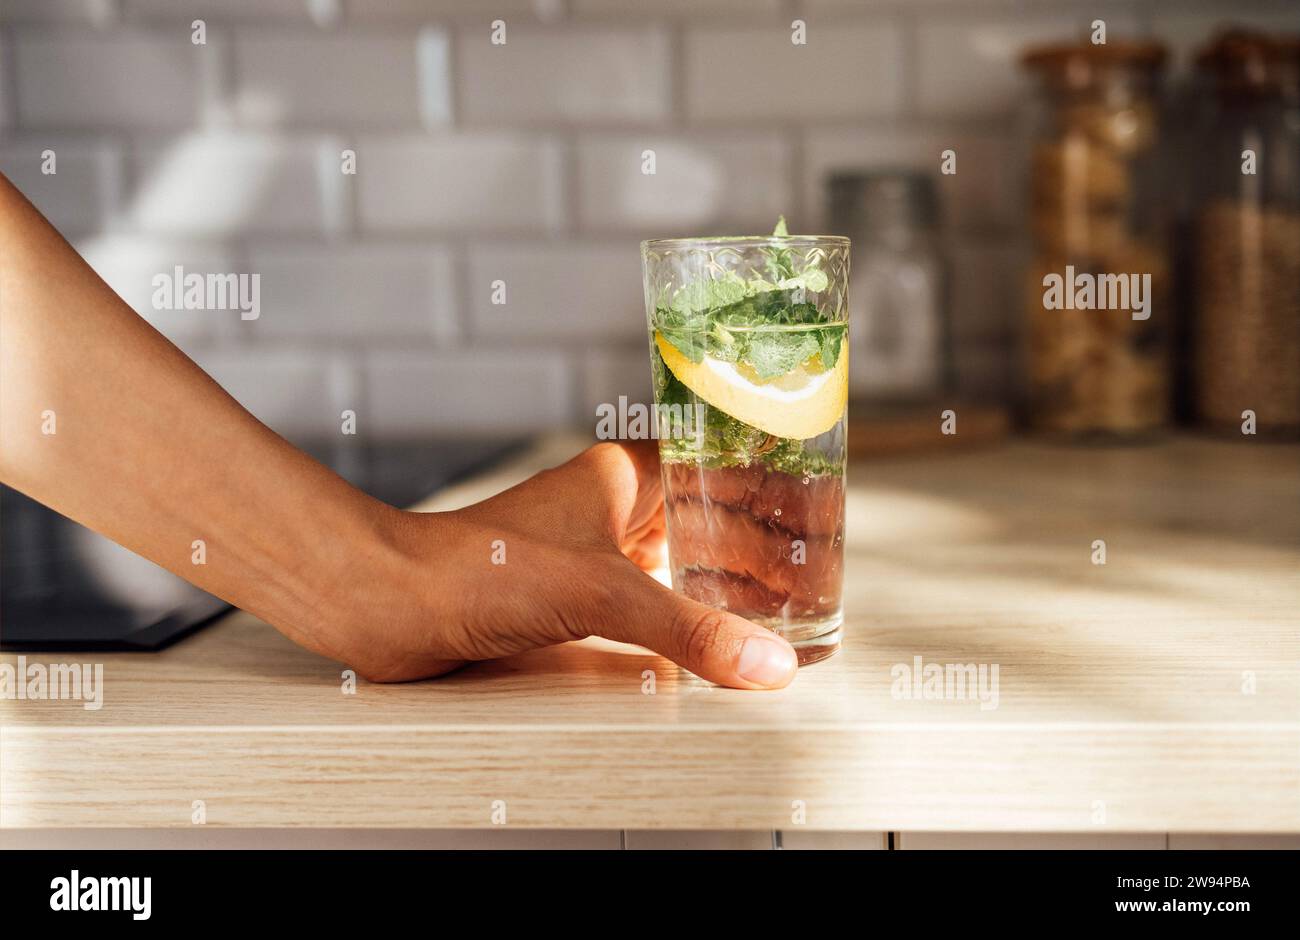 Gros plan de la main féminine tient un mojito citron rafraîchissant sur une table en bois sur une cuisine à la maison. Glace, menthe et citron vert garnissent le cocktail estival. Banque D'Images